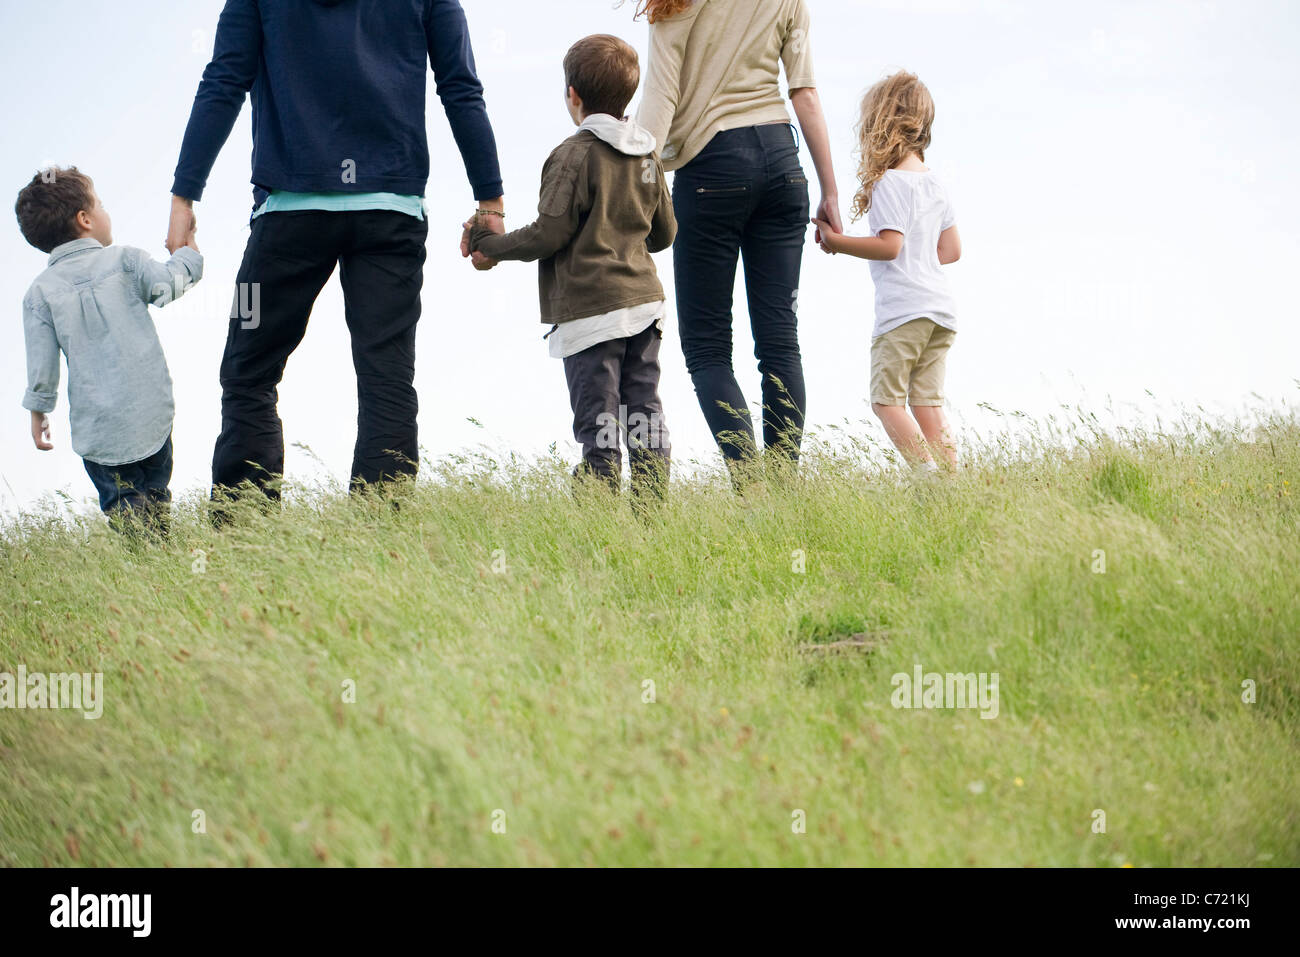 Caminar juntos en el campo de la familia, vista trasera Foto de stock